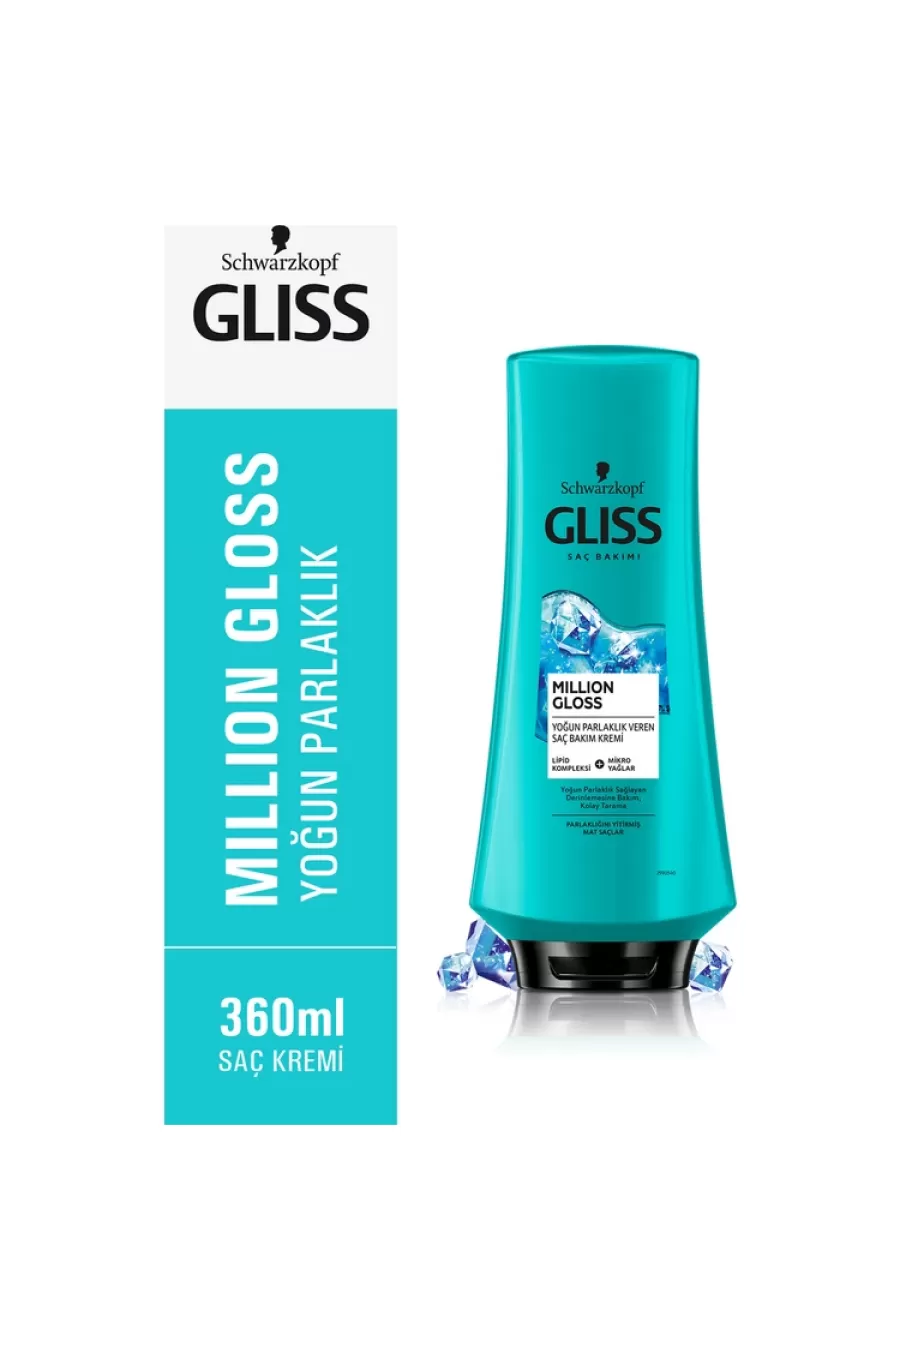 حاوی لیپیدها و روغن های ریز درخشان کننده موهای مات گلیس GLISS نرم کننده و درخشان کننده